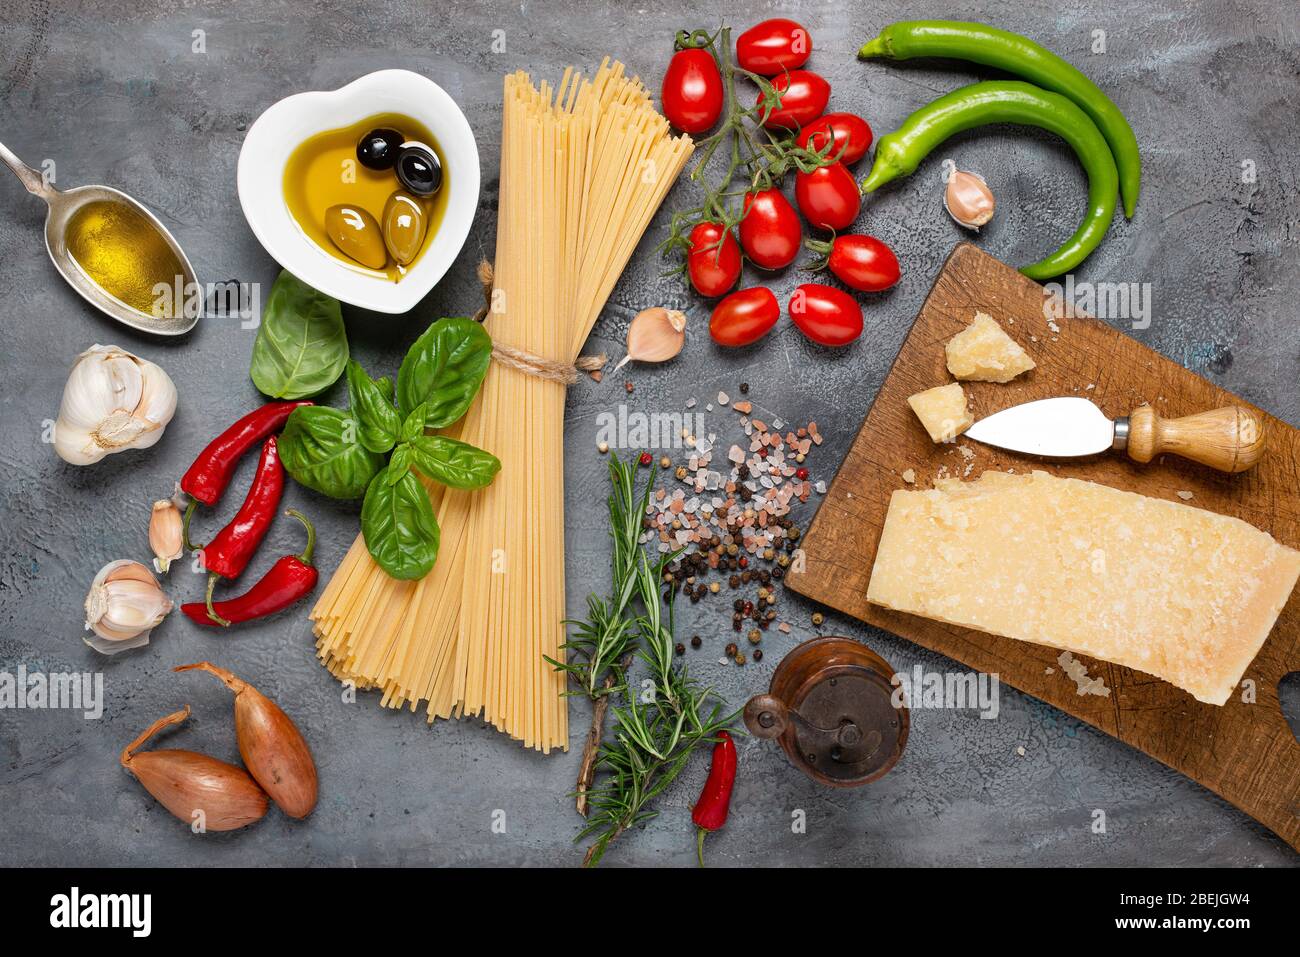 Vue de dessus, sur un fond rustique gris foncé, spaghetti italien avec huile d'olive, fromage assaisonné, bouquet de tomates, divers légumes et épices Banque D'Images